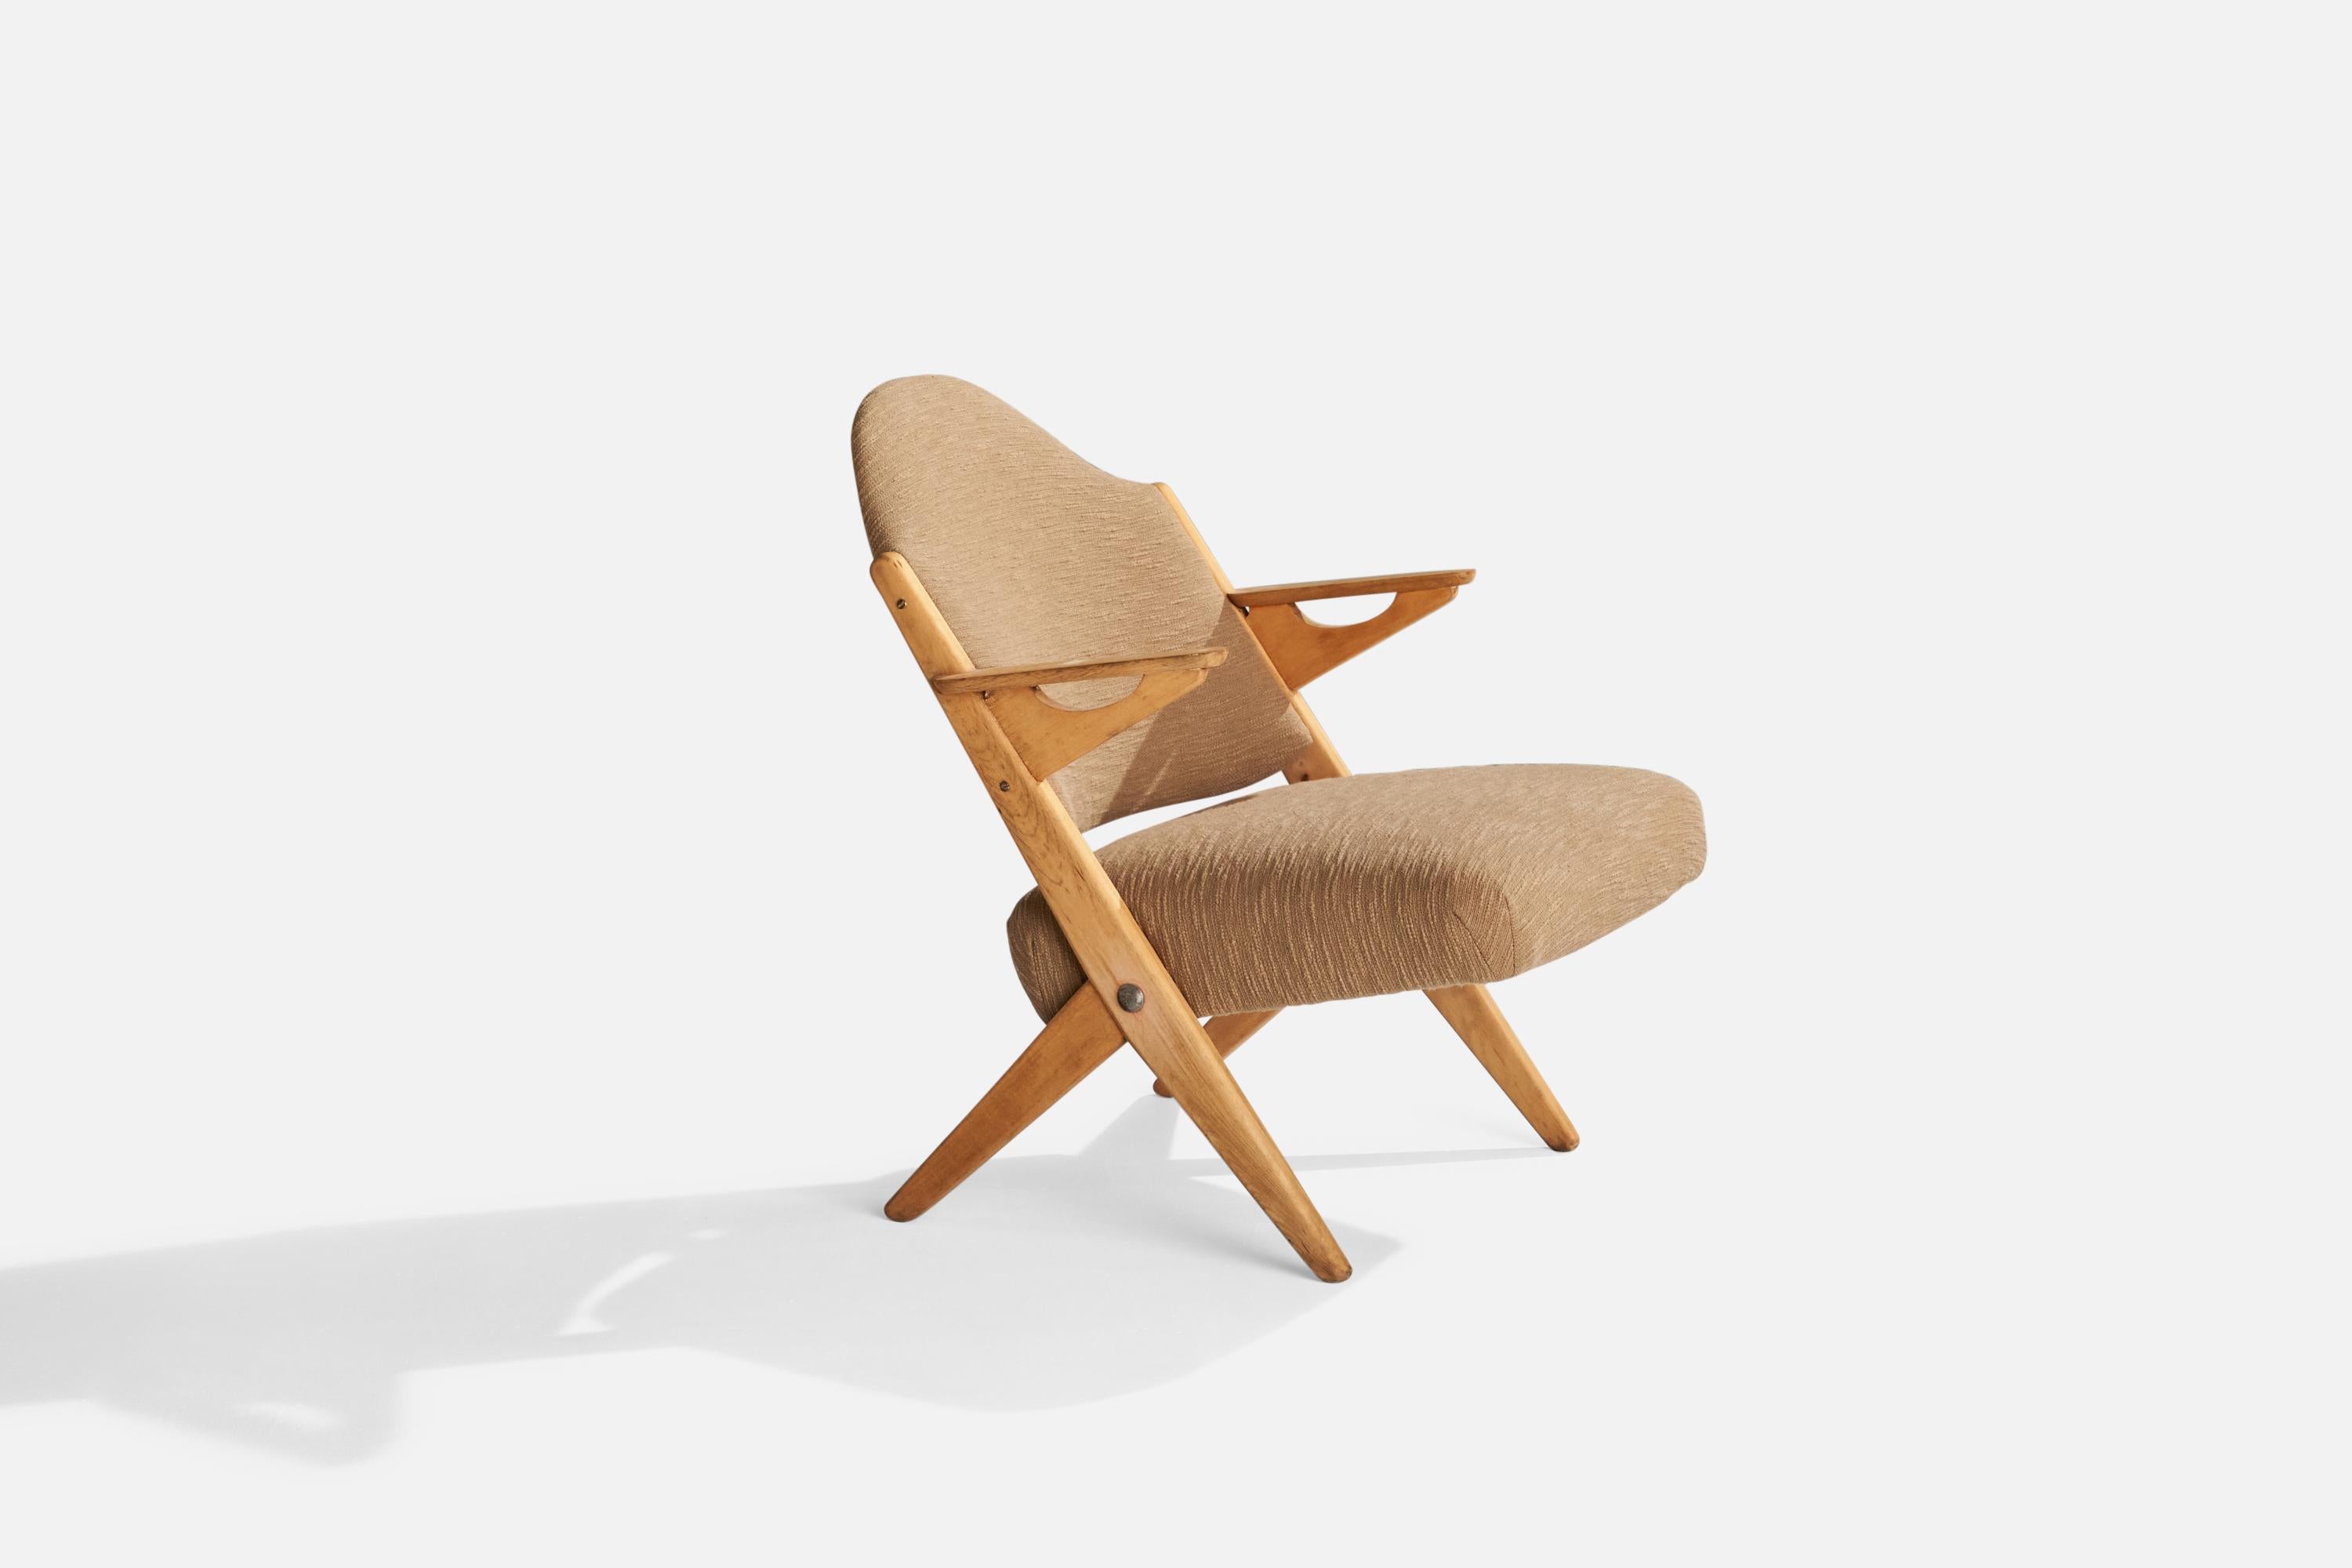 Chaise longue en hêtre et tissu beige, conçue par Arne Hovmand/Olsen et produite par Komfort Randers, Danemark, années 1950.

Hauteur d'assise 16